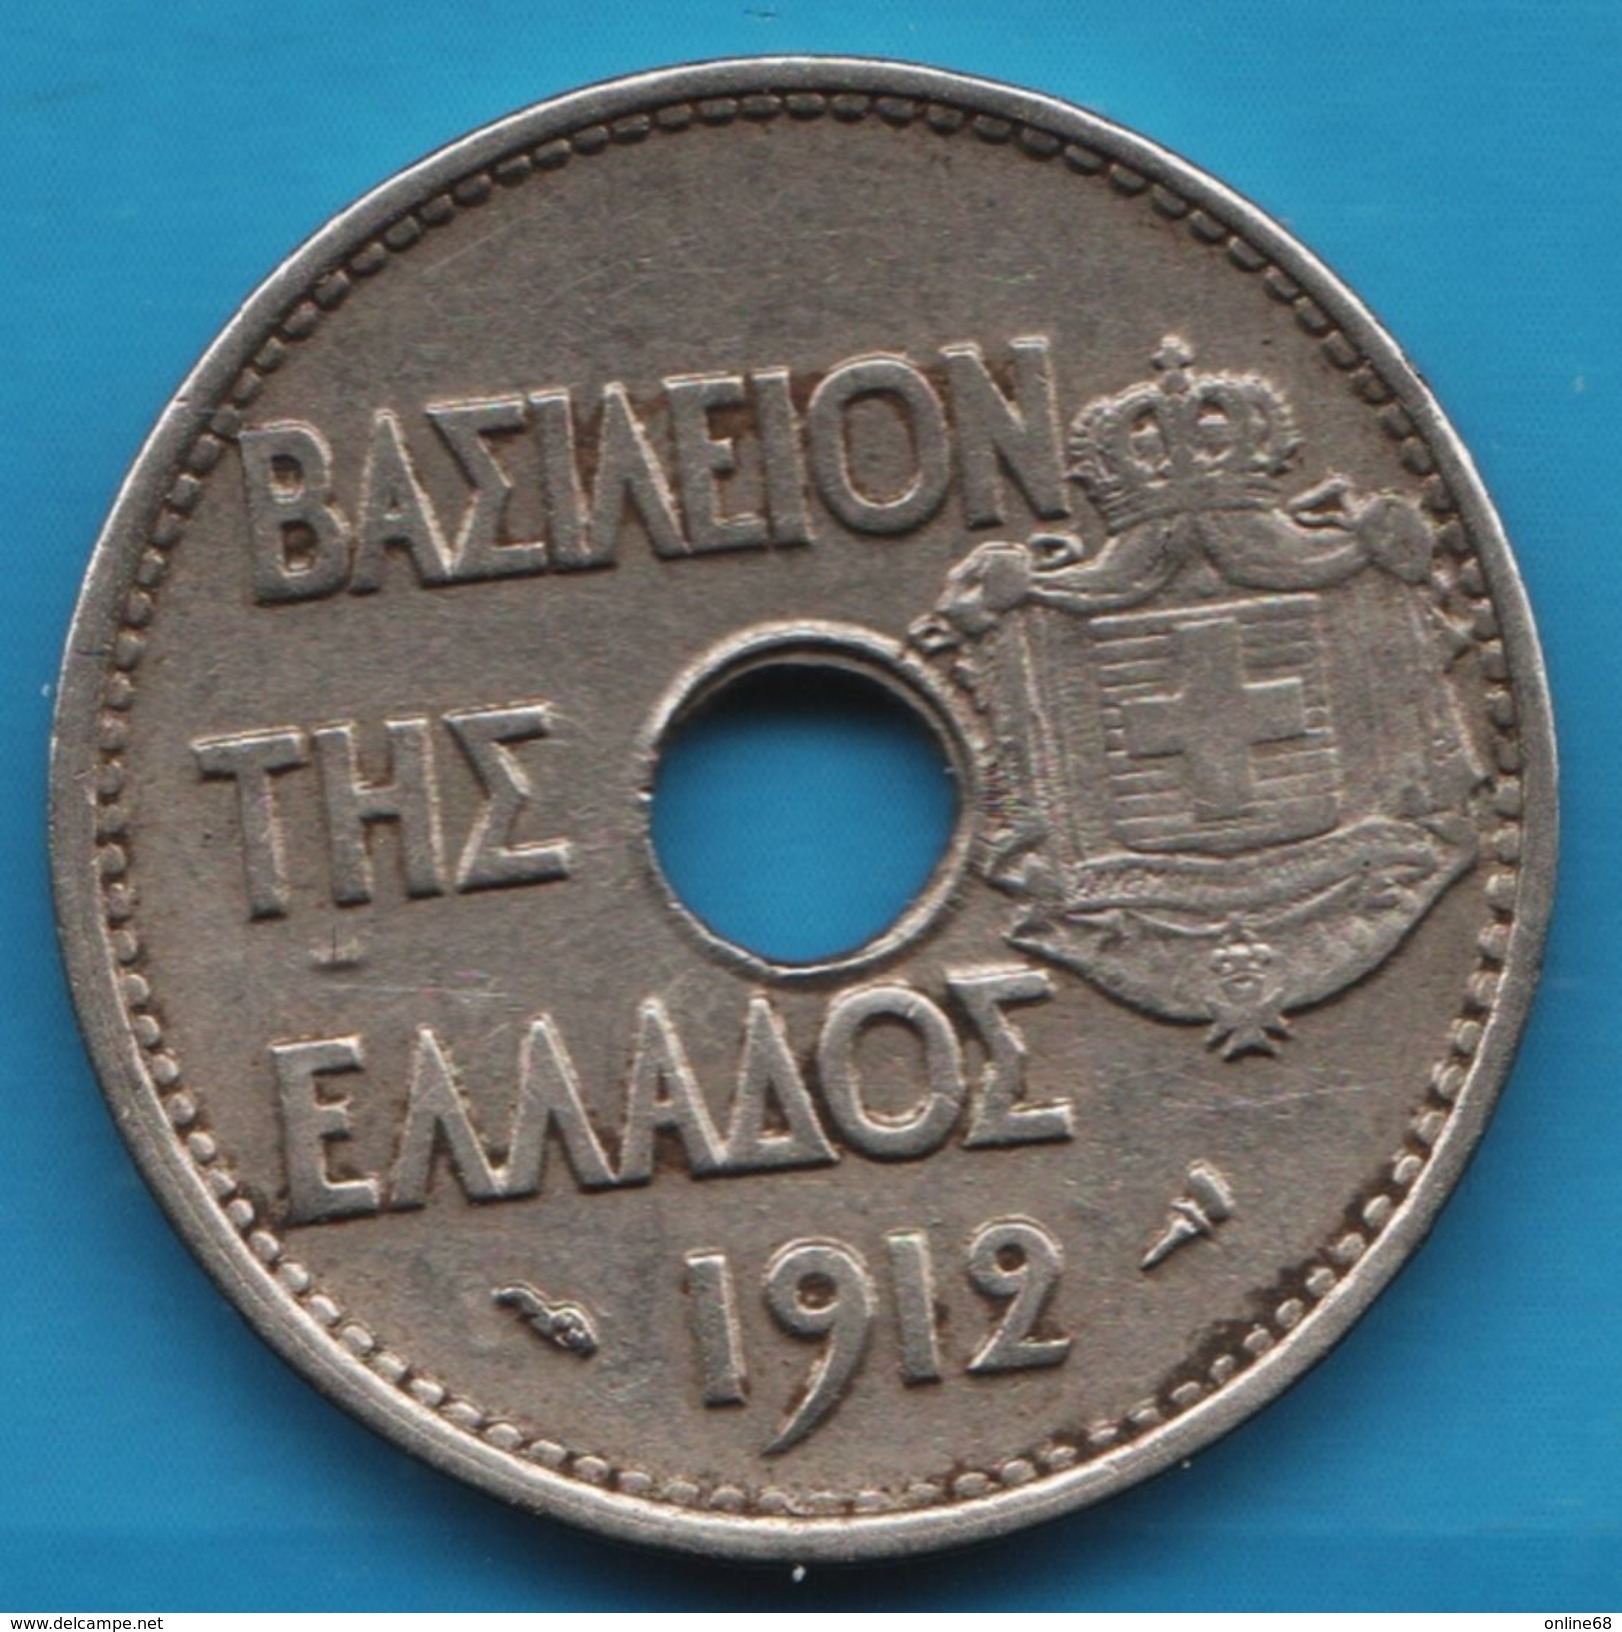 GRECE GREECE 20 LEPTA 1912 George I Royaume KM# 64 Athéna - Grèce